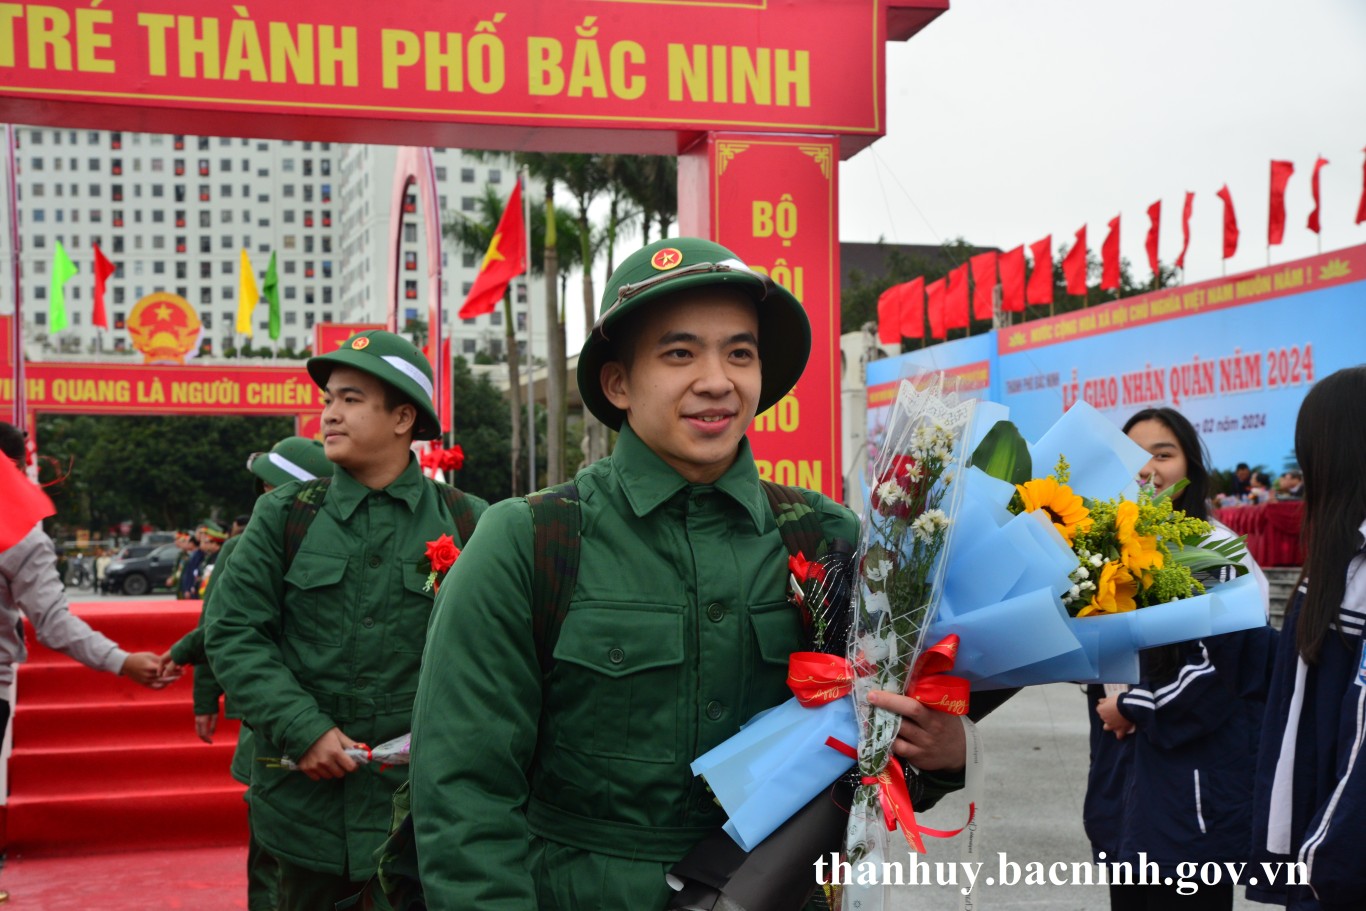 Thành phố Bắc Ninh tổ chức thành công Lễ giao nhận quân năm 2024